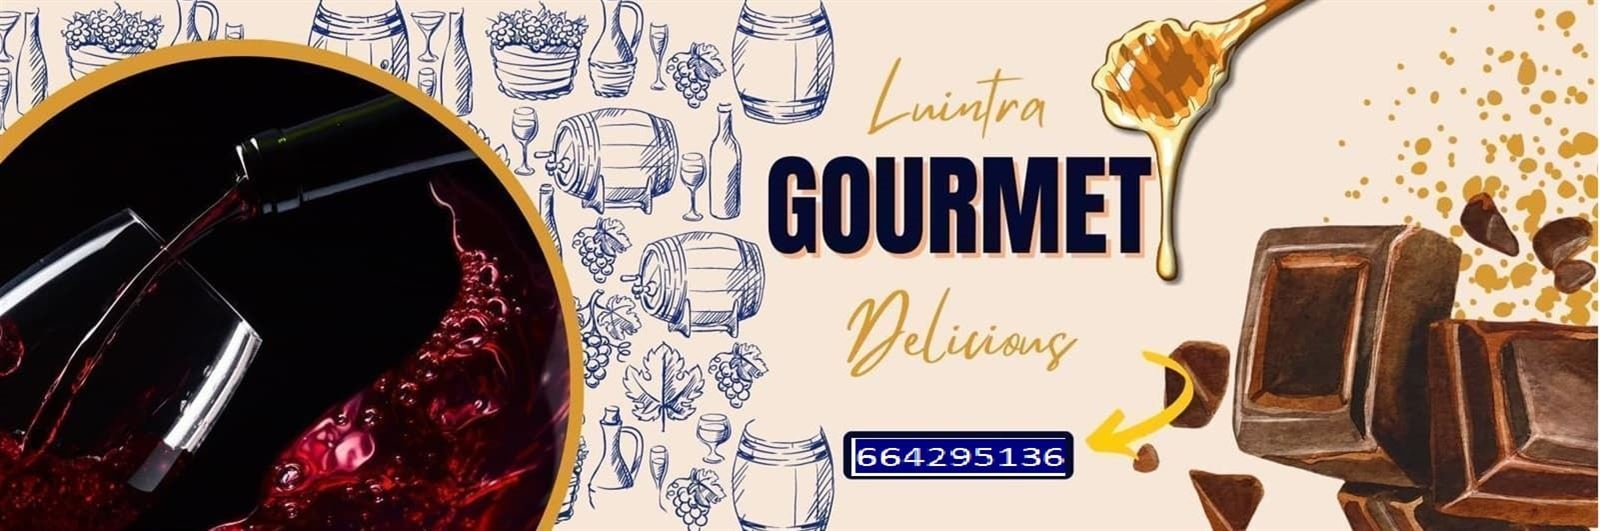 Tienda Gourmet de productos gallegos situada en Luintra (Ourense)